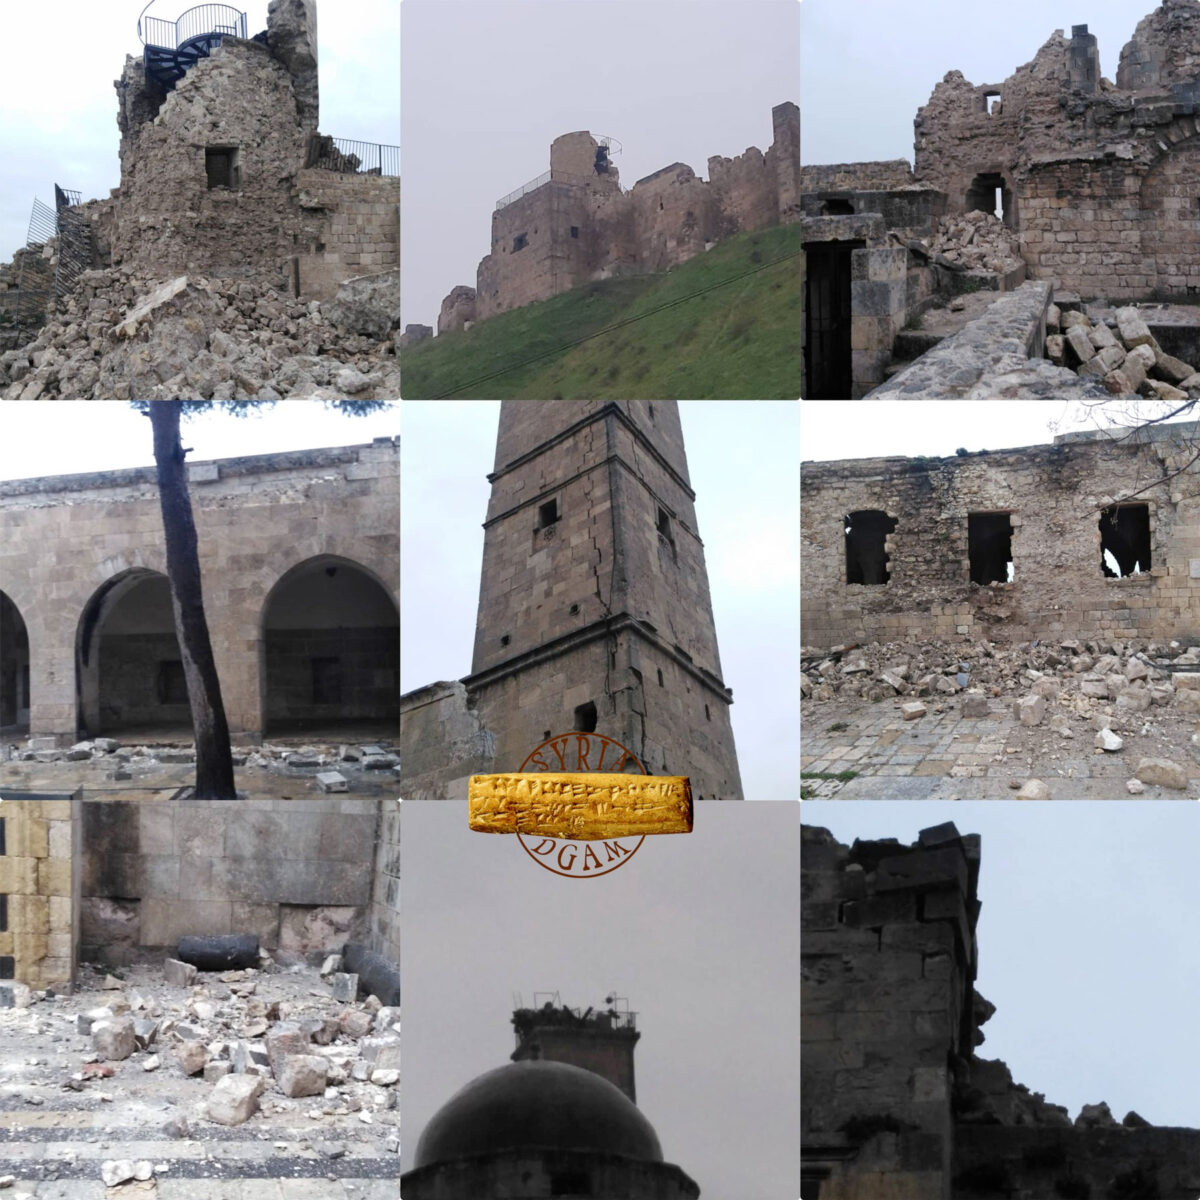 Η Γενική Διεύθυνση Αρχαιοτήτων και Μουσείων της Συρίας δημοσιοποίησε φωτογραφίες στο Facebook που δείχνουν μνημεία με ζημιές από τον πρόσφατο σεισμό (πηγή εικόνας: DGAM Syria / Facebook).